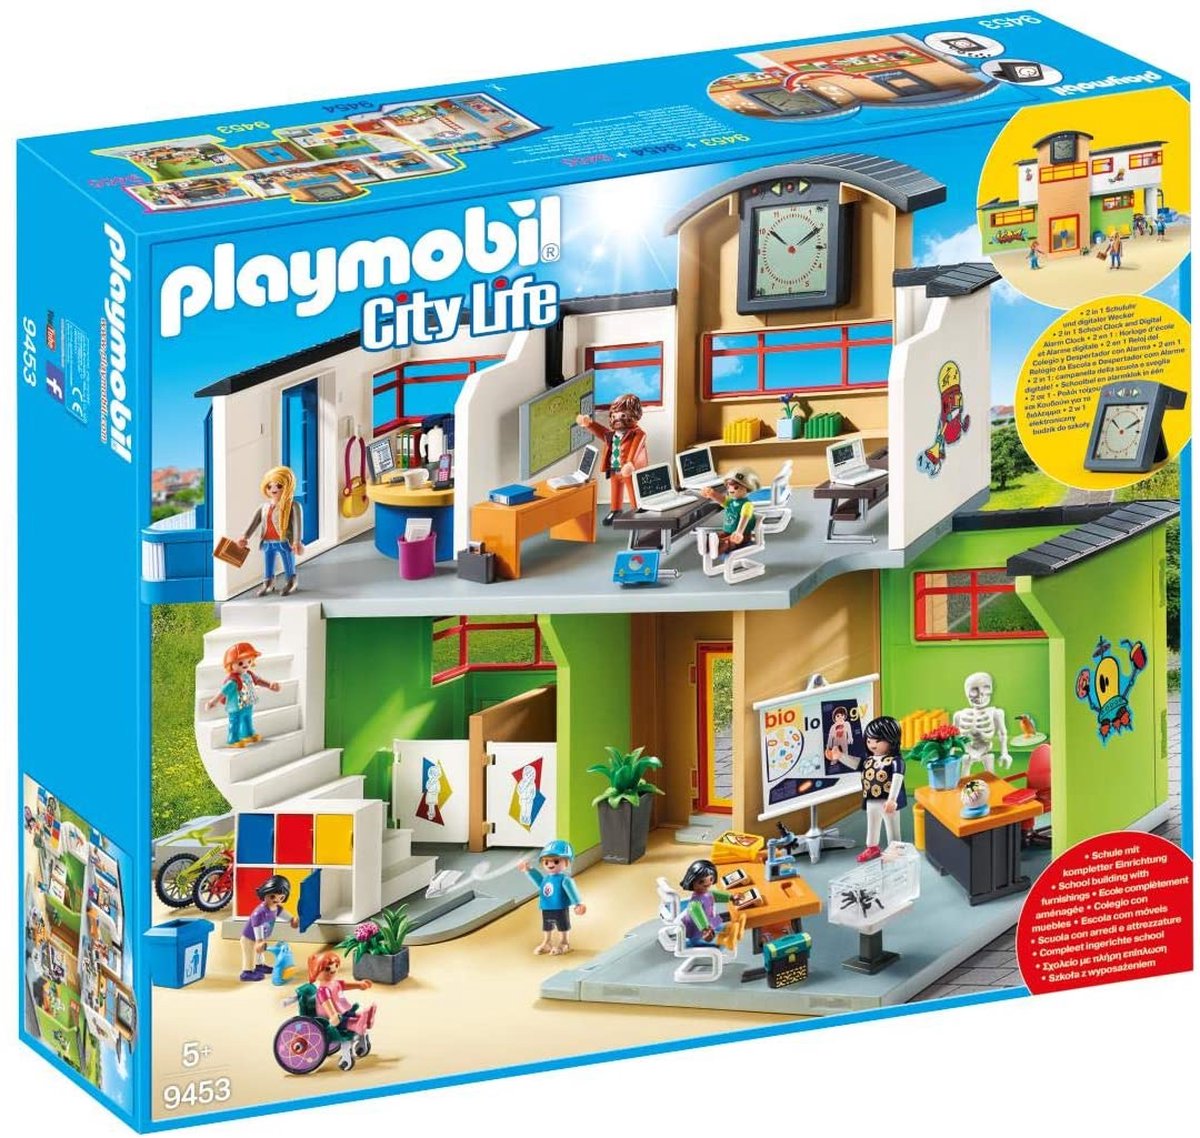 Acheter Playmobil - Maison moderne - Extension d'étage 70986